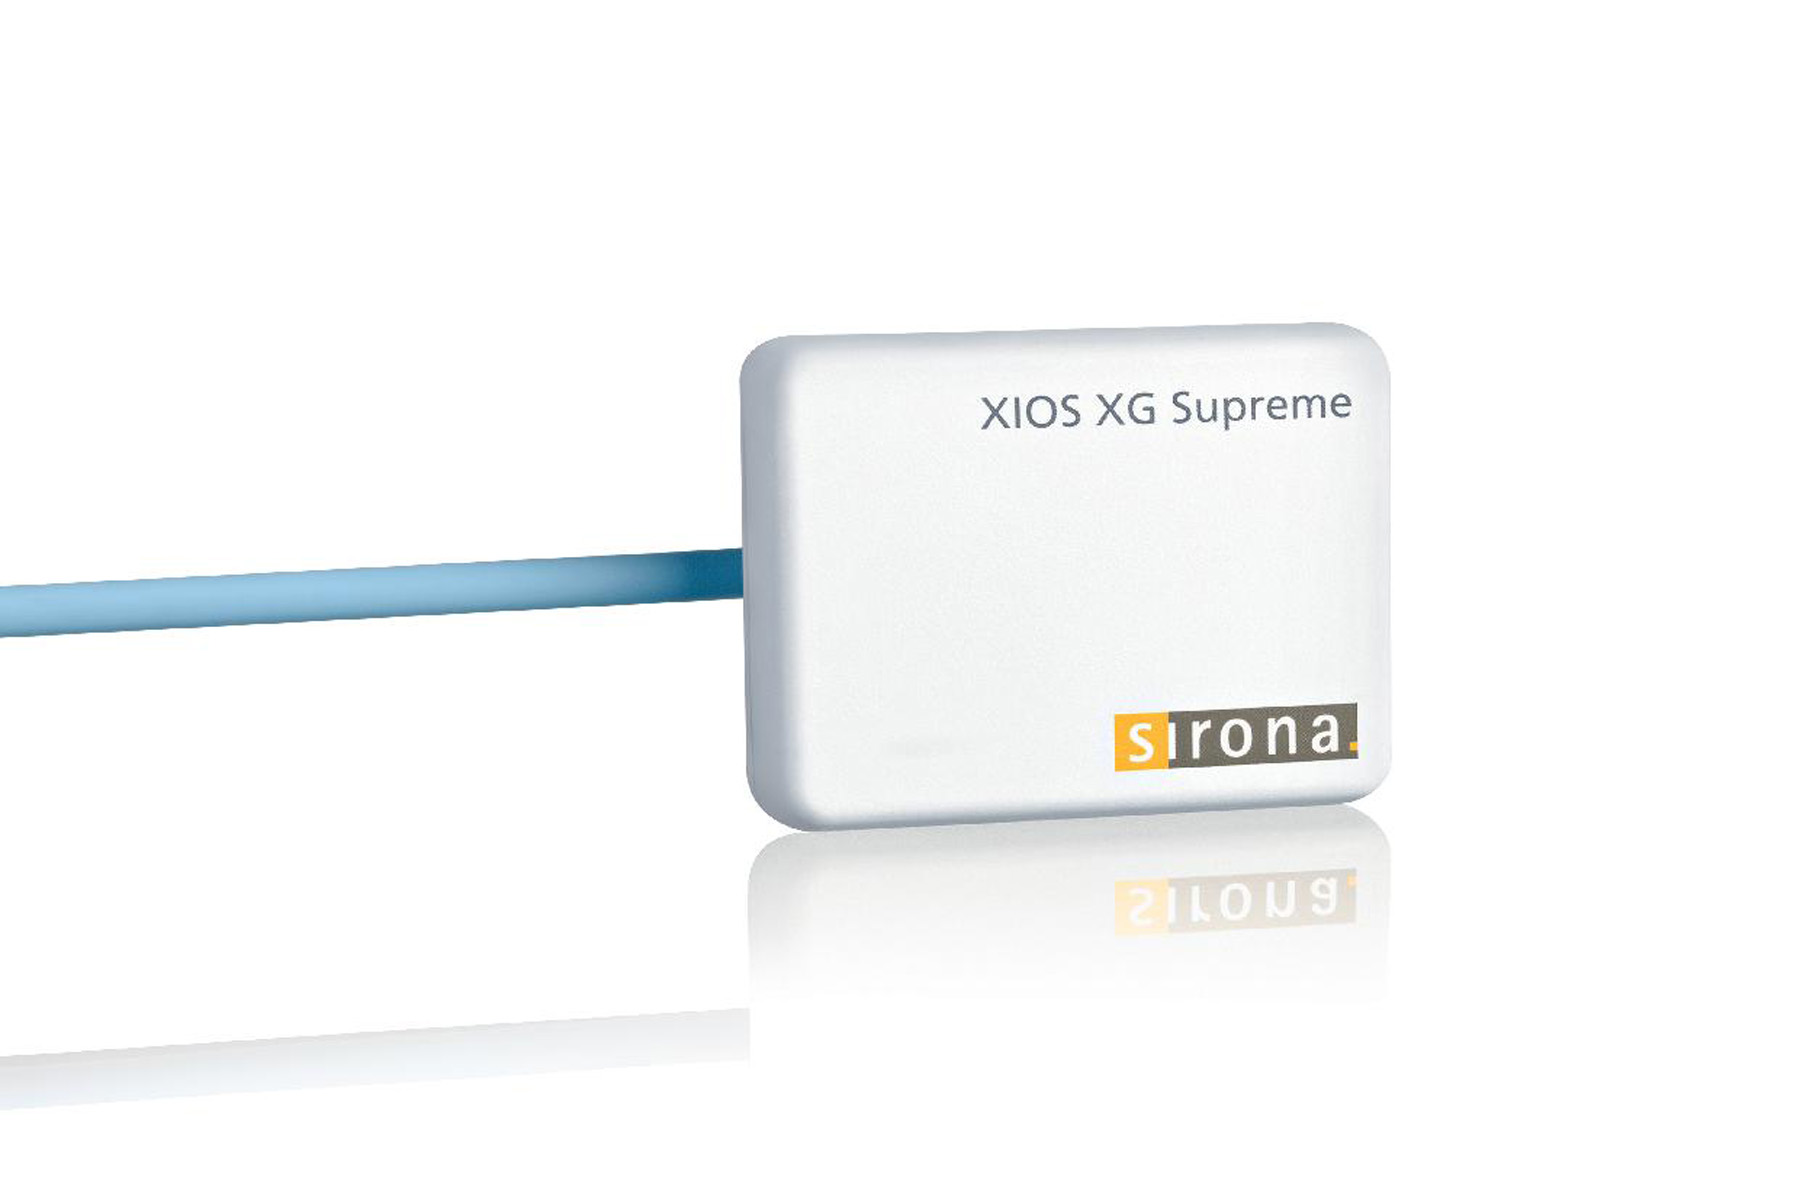 XIOS XG Supreme WiFi module with sensor size 1